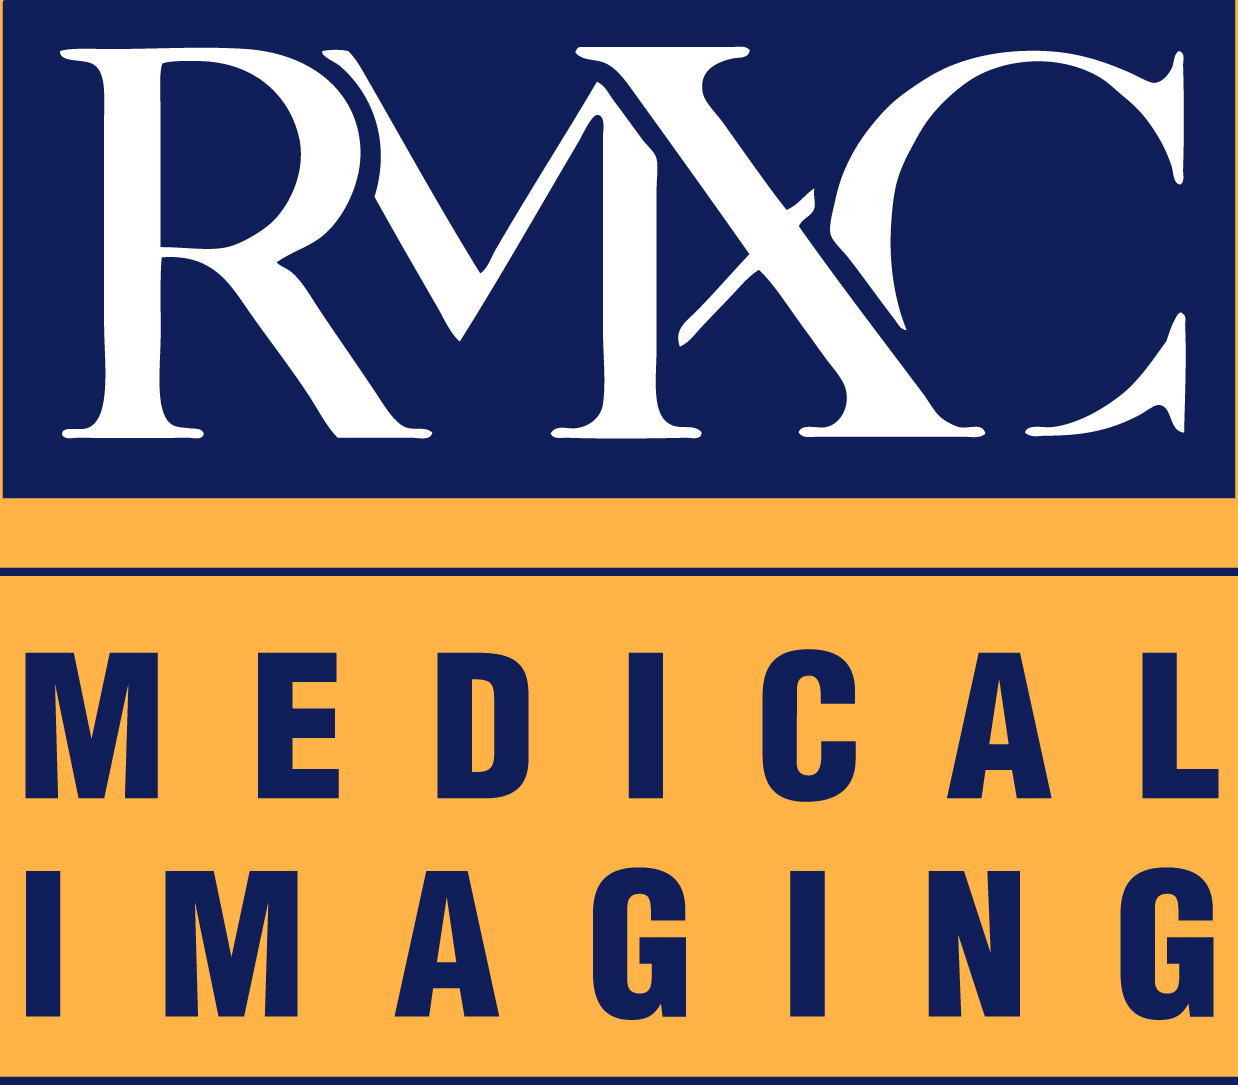 RMXC Medical Imaging